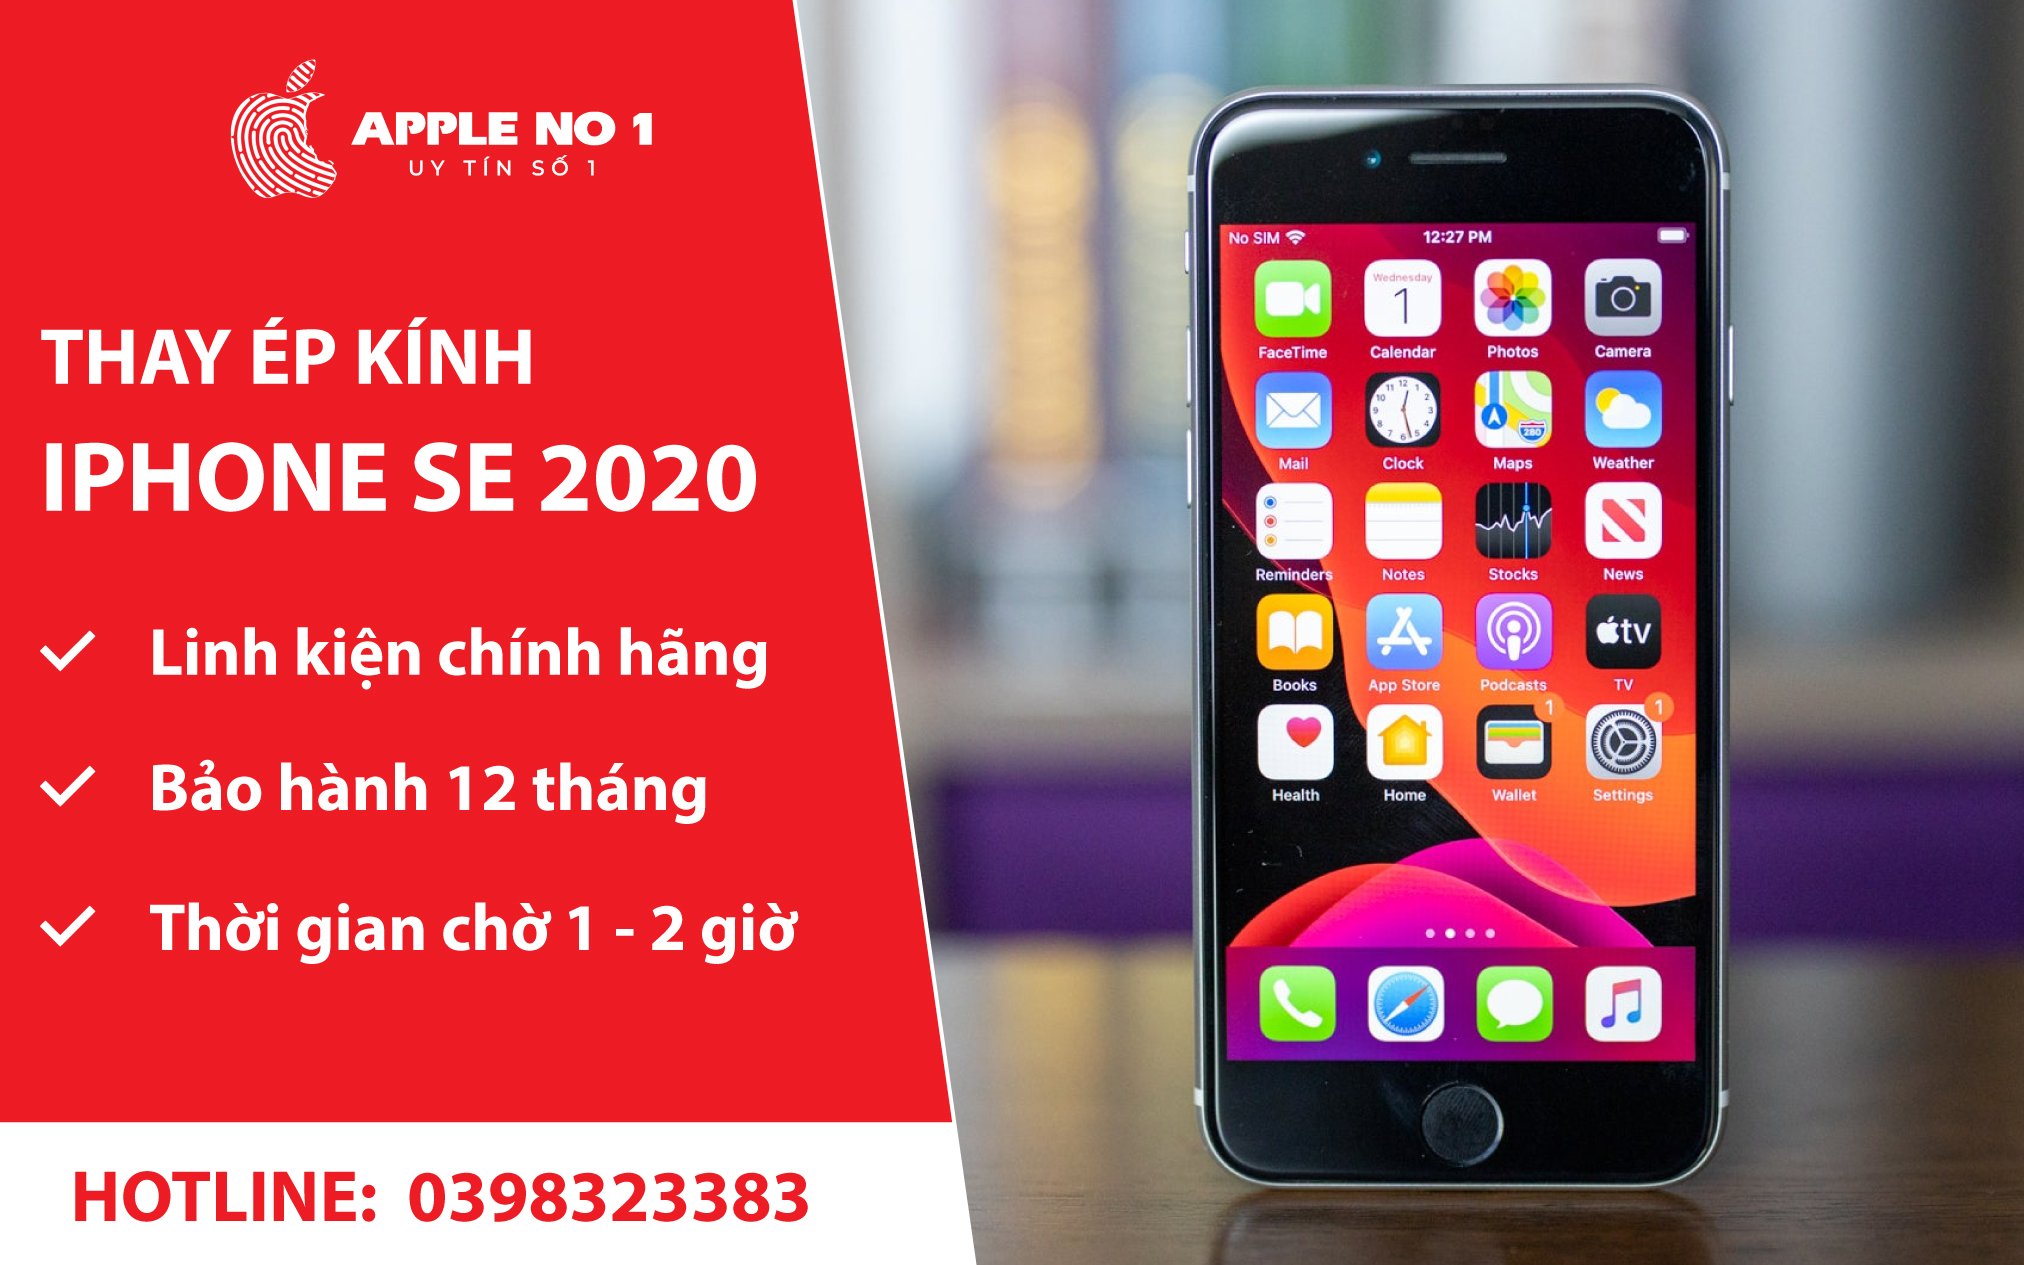 dich vu thay kinh iphone se 2020 bao hanh dai, chat luong cao tai apple no.1